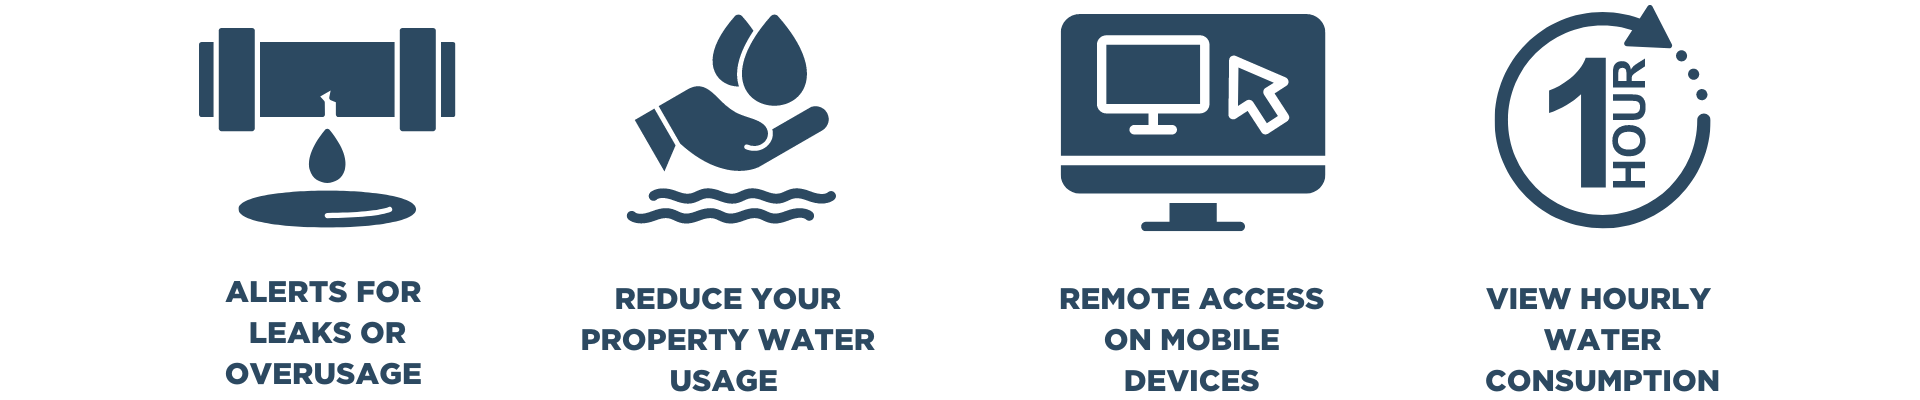 Smart Water Meter Benefit Icons